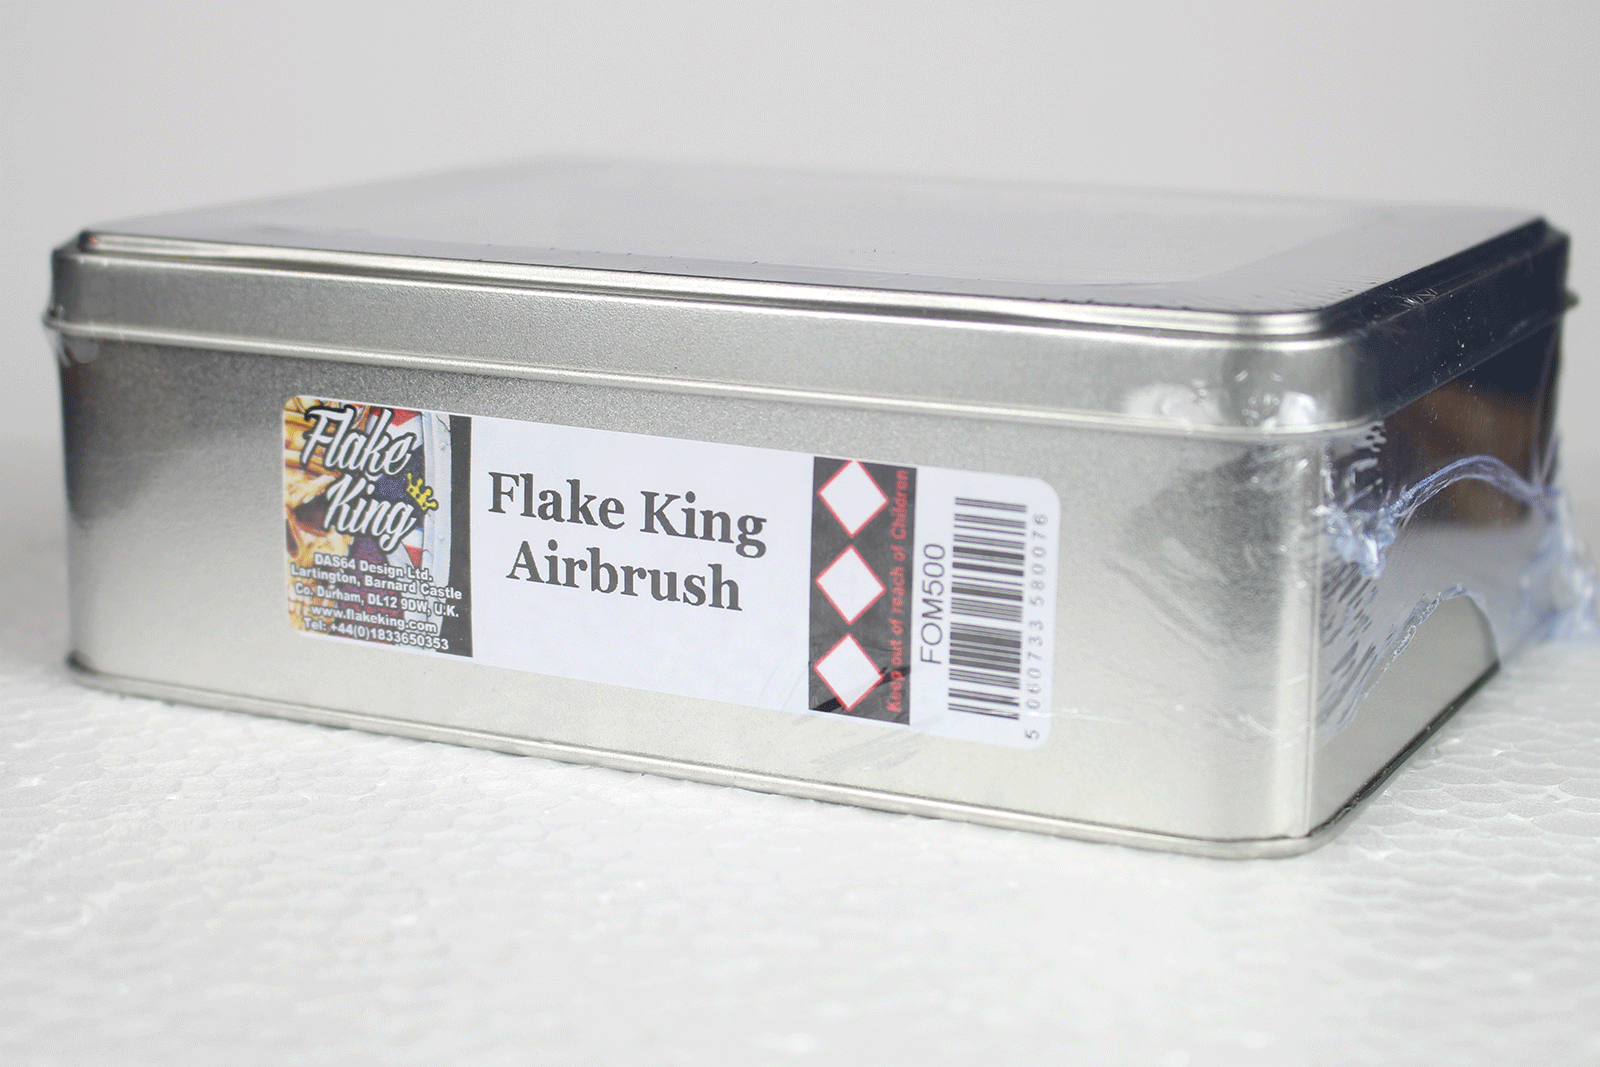 Flake King FOM500 Kit w/ Iwata Gravity Feed Airbrush – Roth Metal Flake